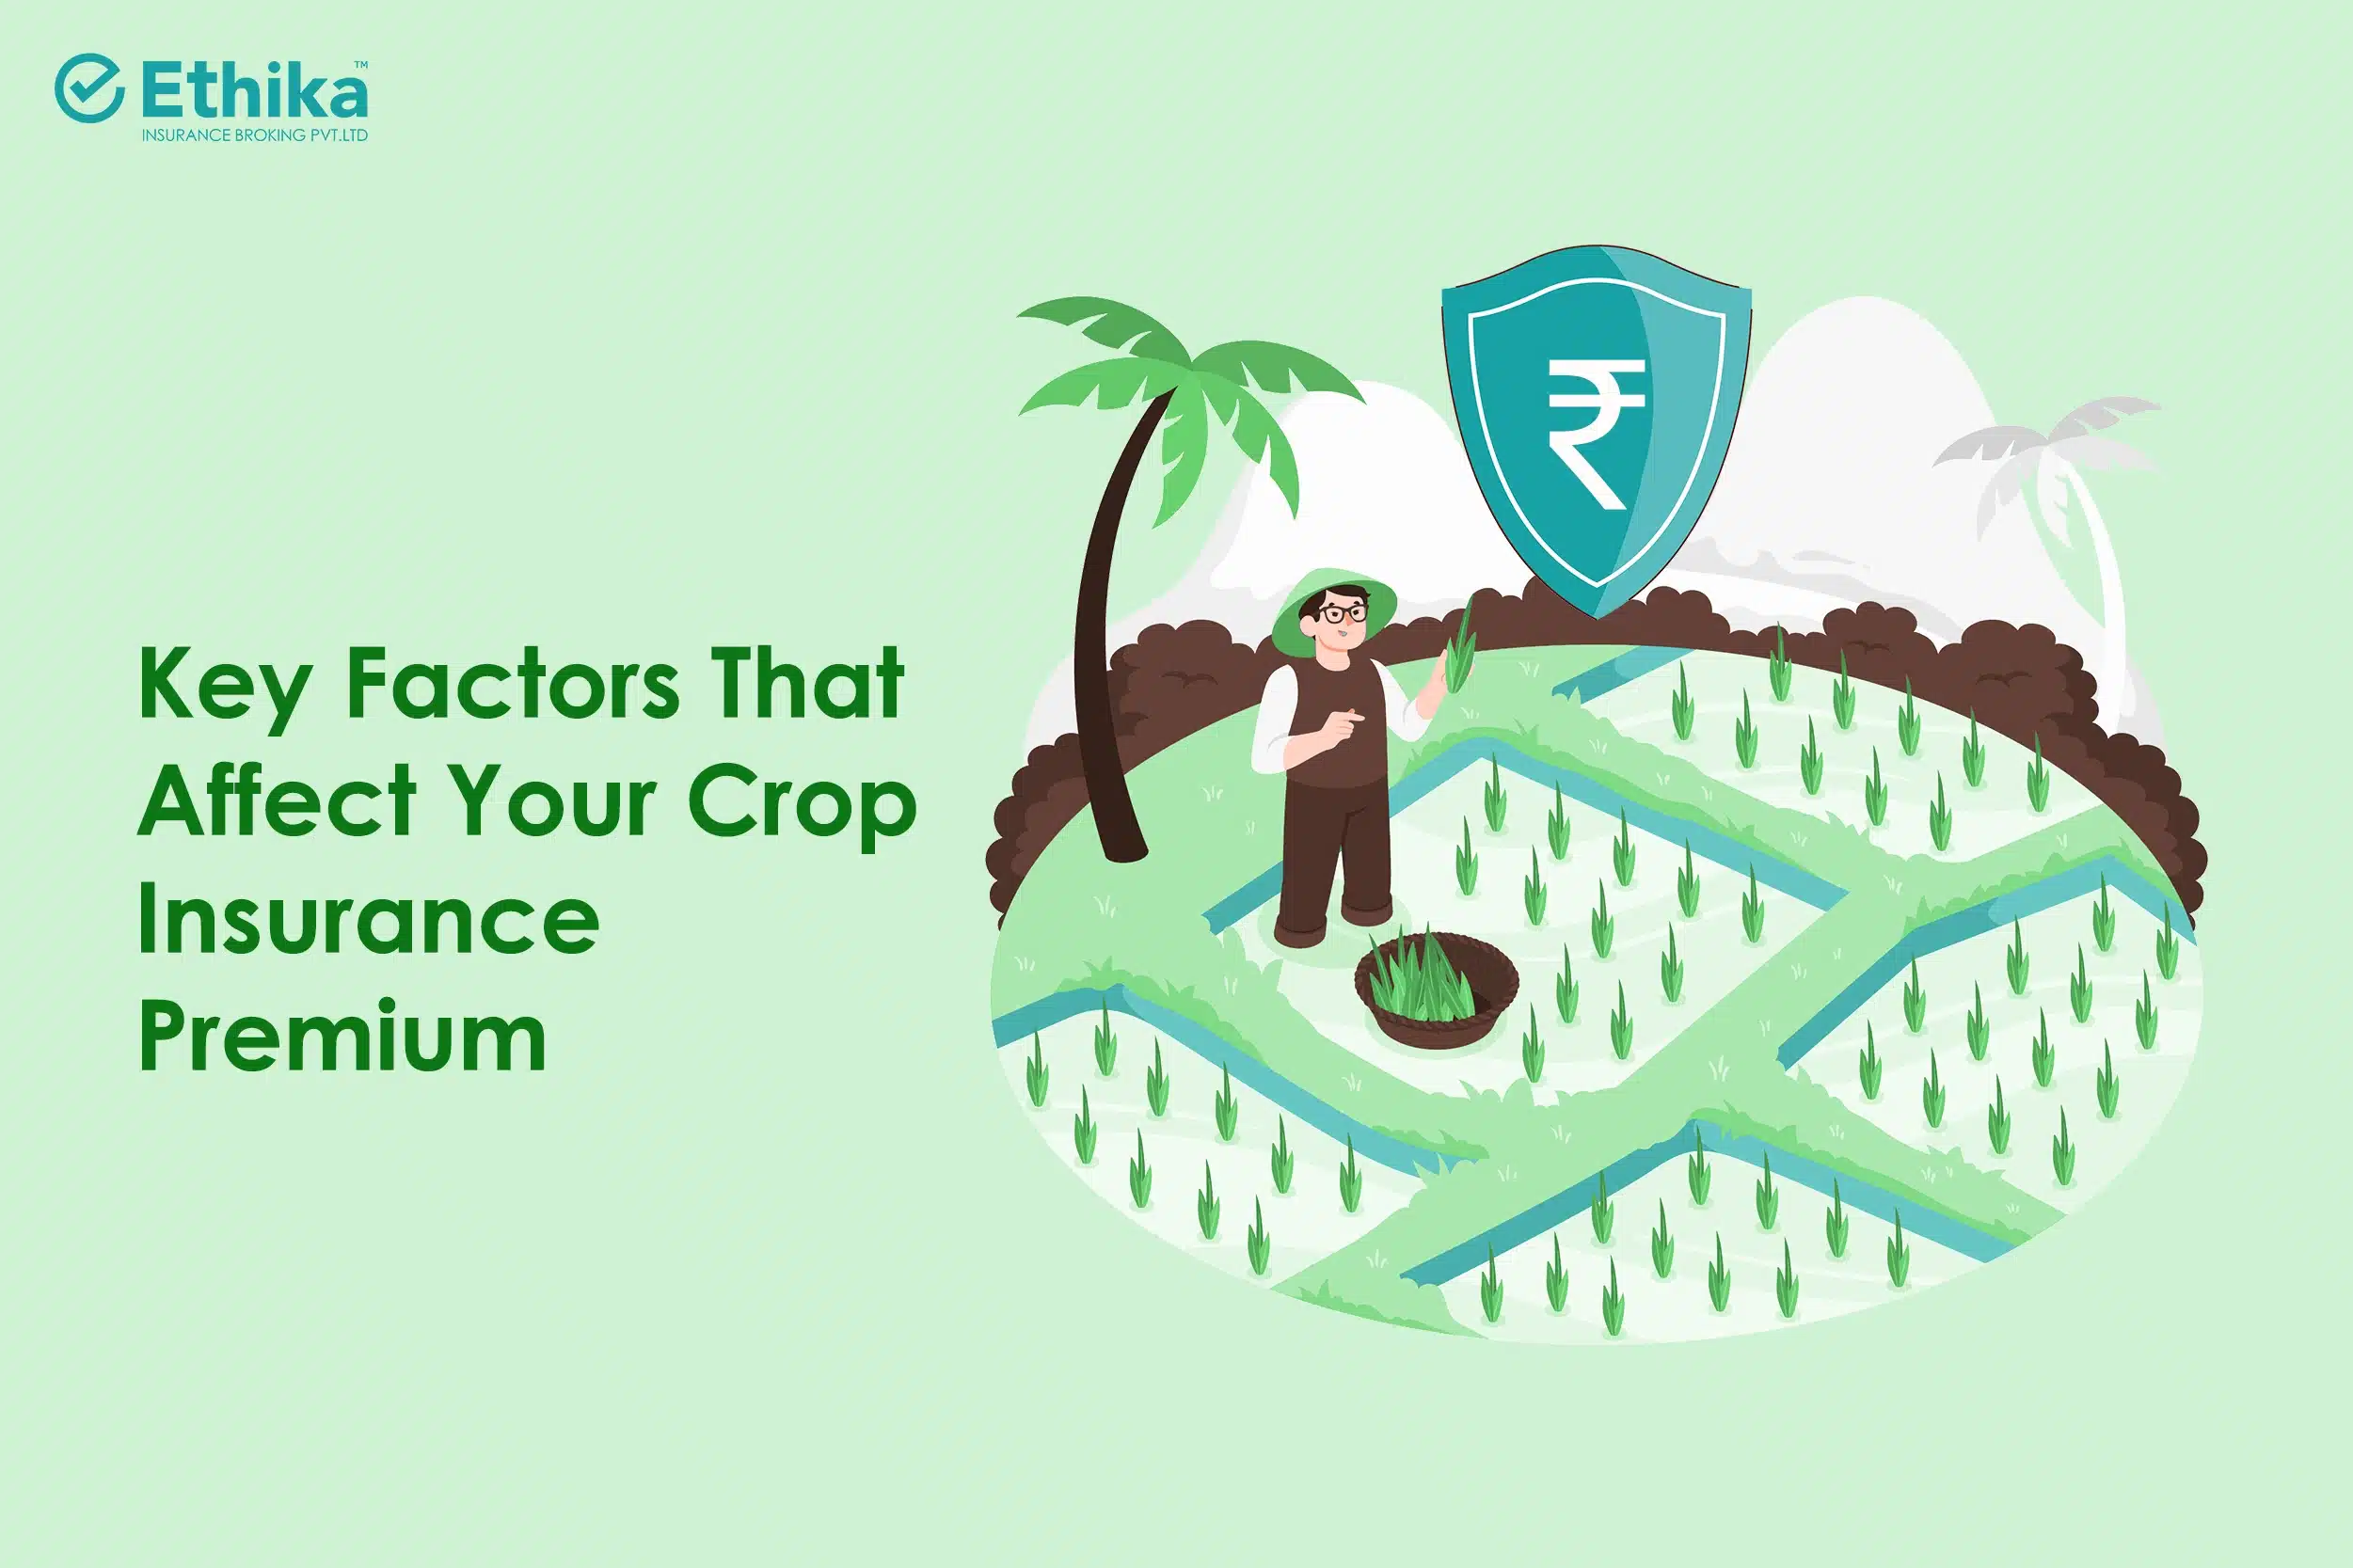 Key Factors That Affect Your Crop Insurance Premium